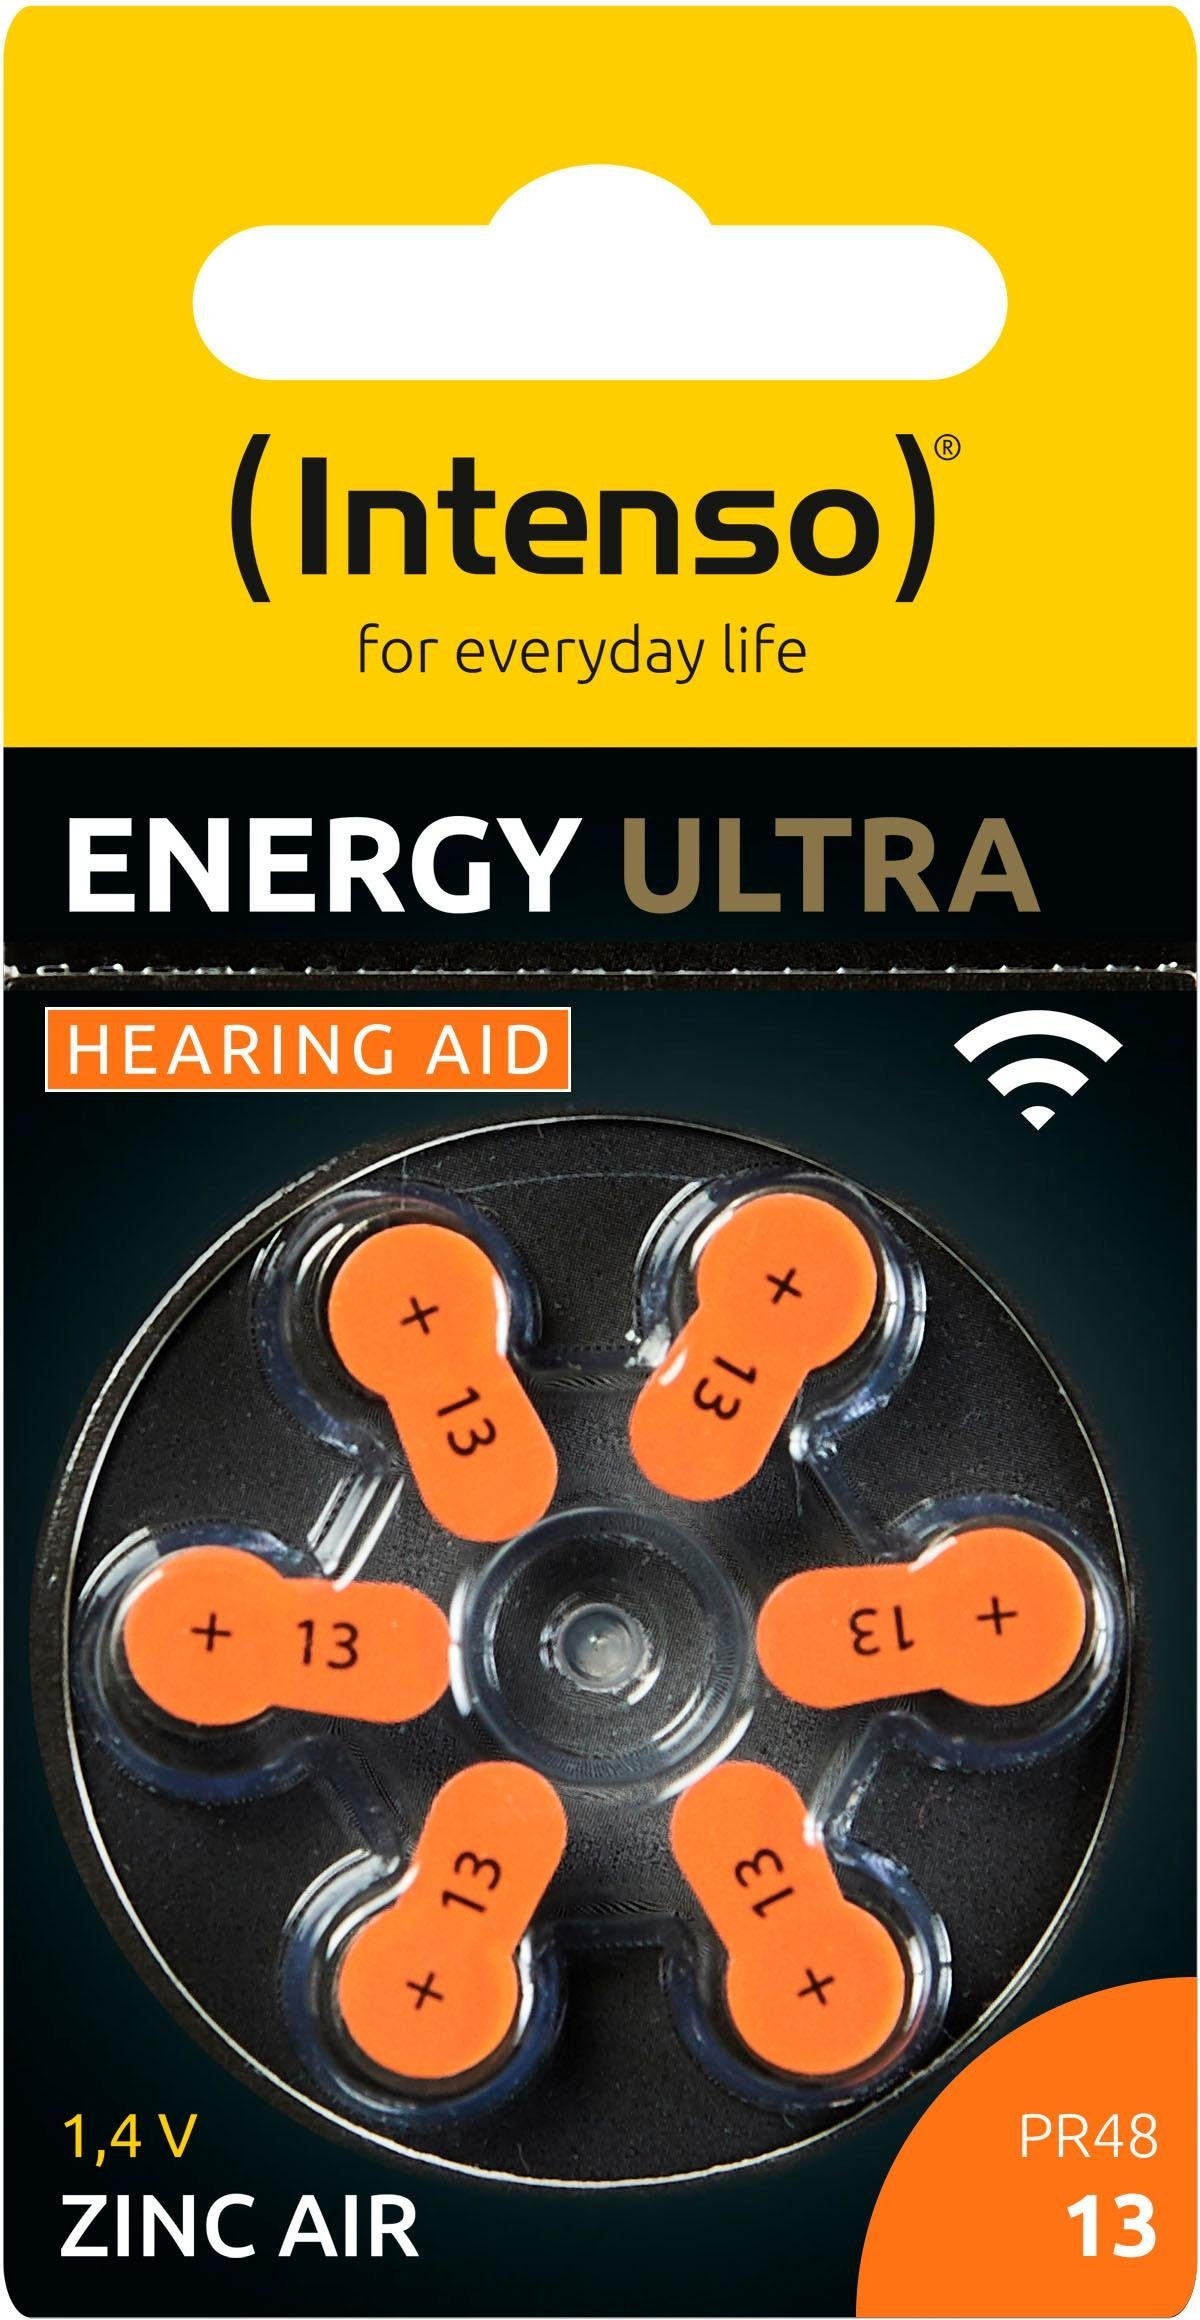 Intenso Batterie »6er Pack Energy Ultra Zink-Luft Hörgerätebatterie 13«, (6 St.), geeignet für Hörgeräte Hörhilfen Hörverstärker 312